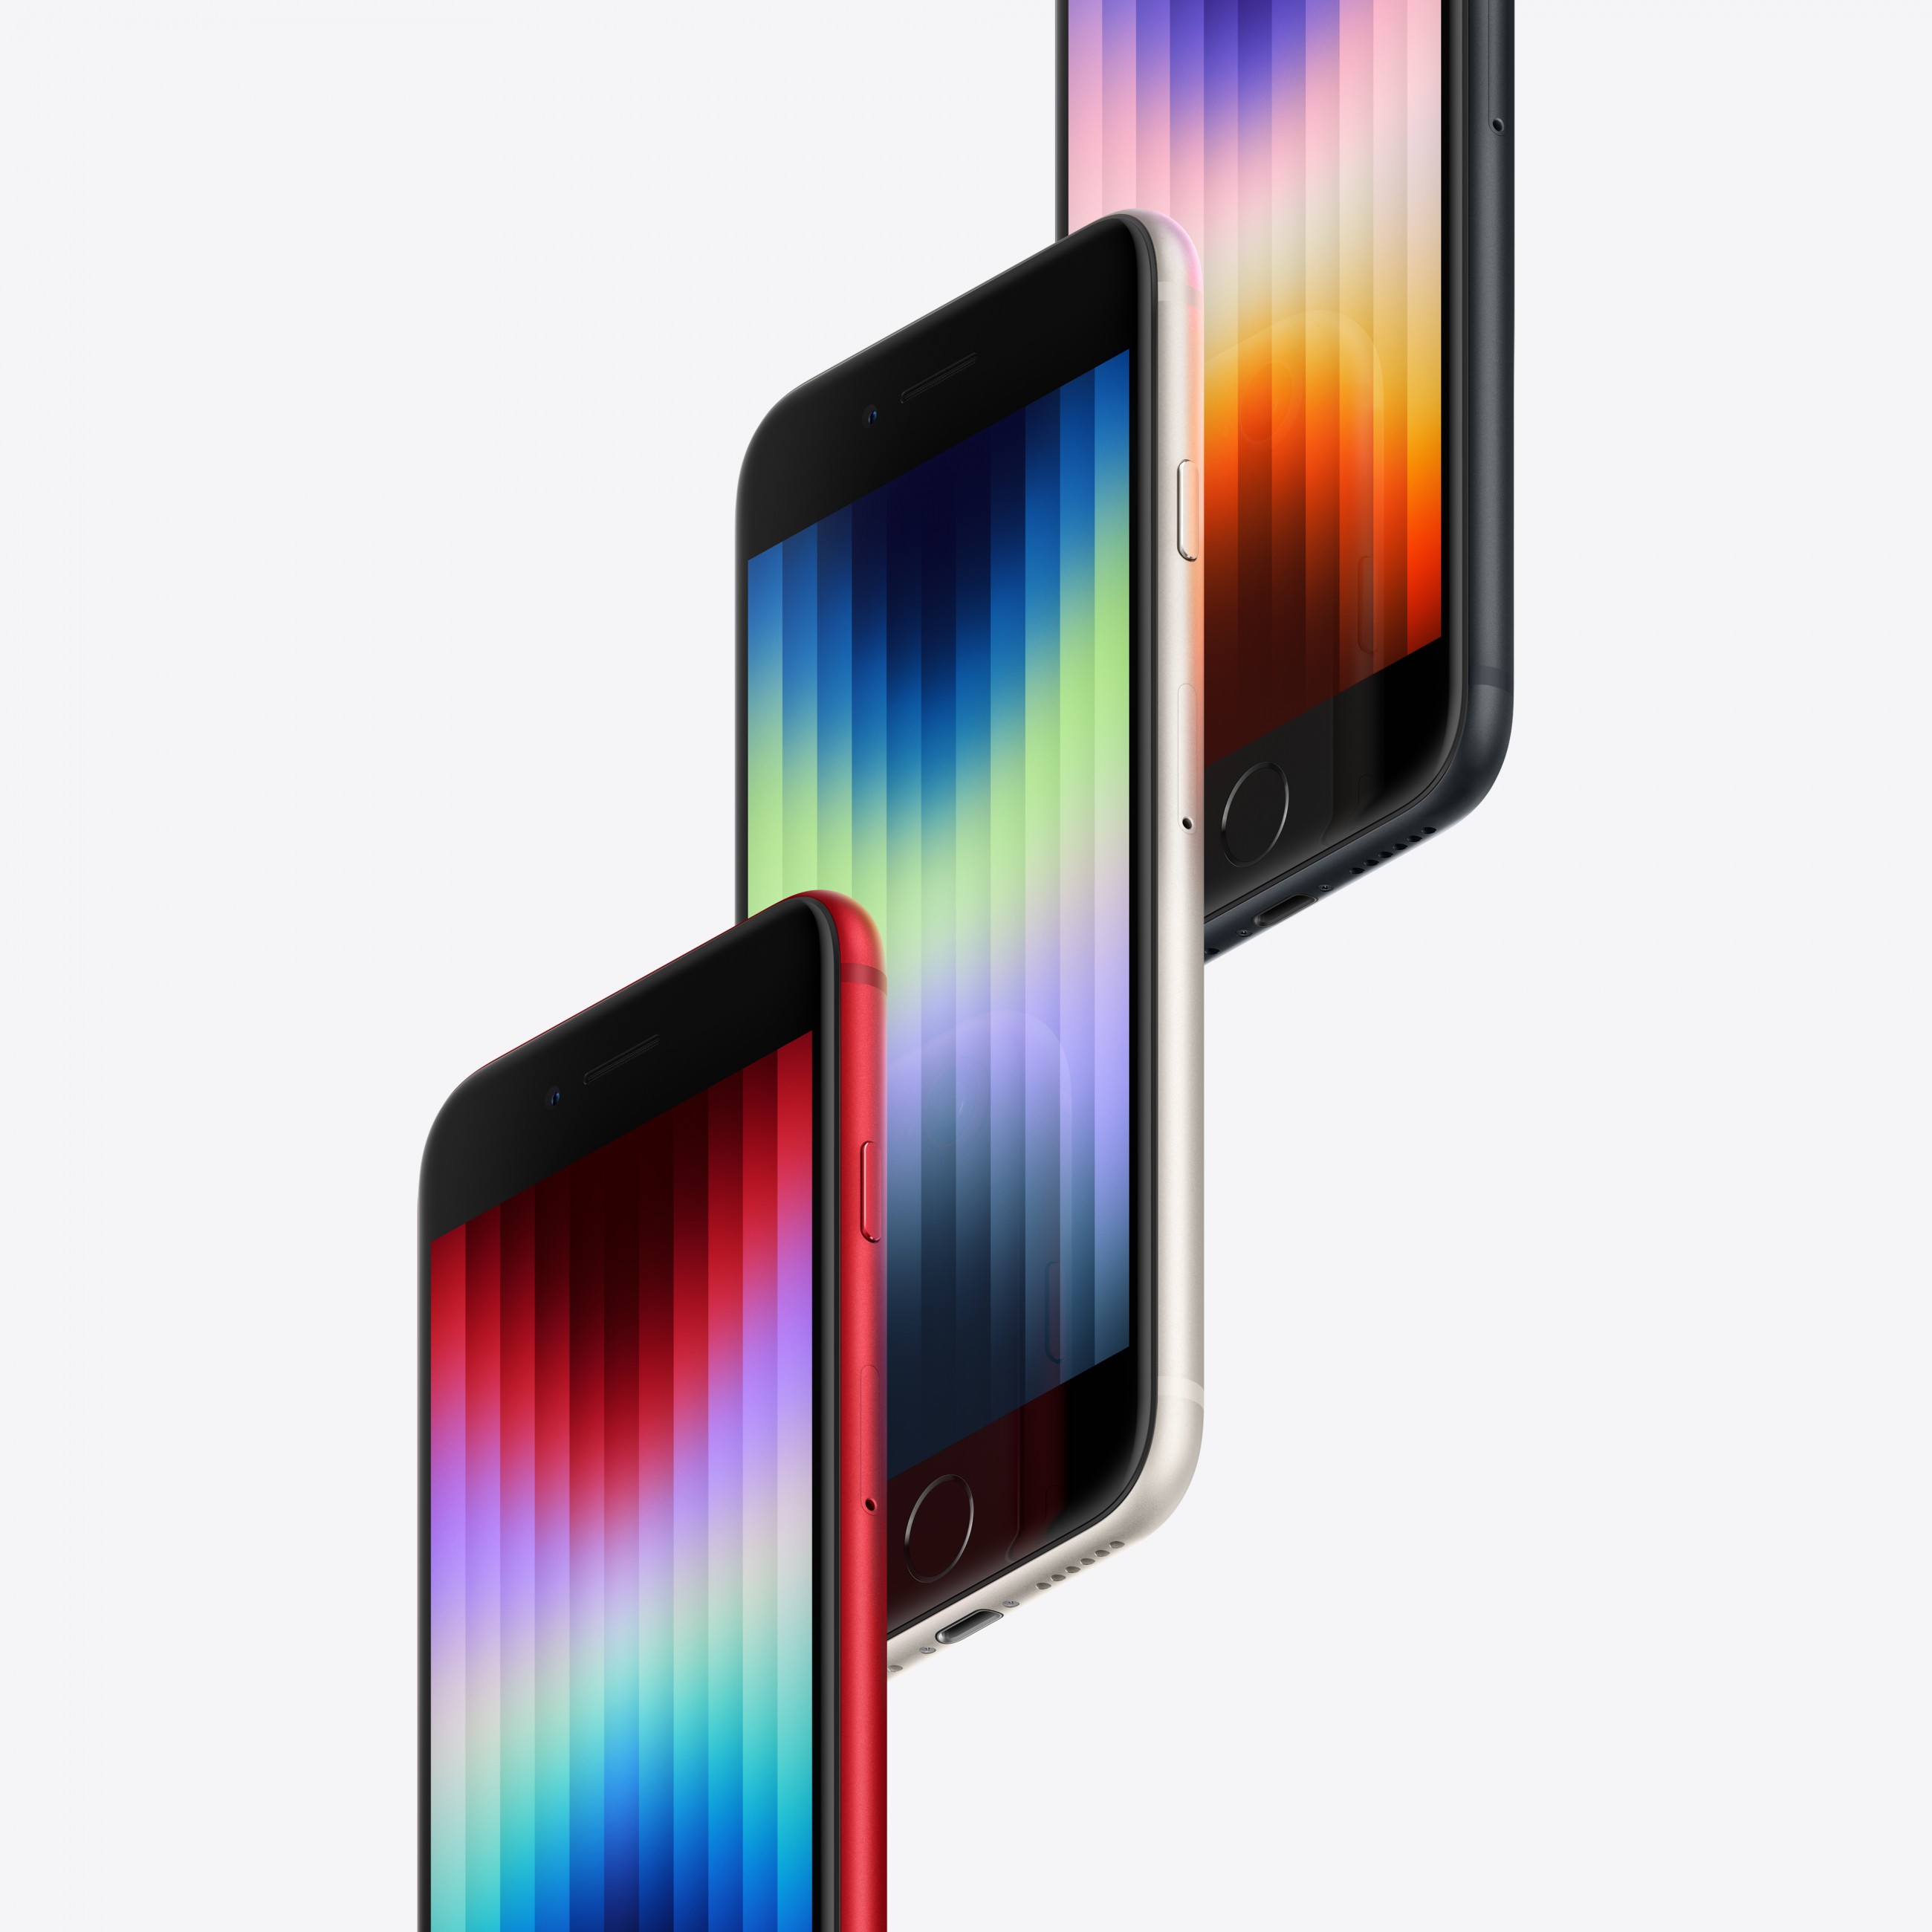 Apple iPhone SE 11,9 cm (4.7 Zoll) Dual-SIM iOS 15 5G 128 GB Weiß